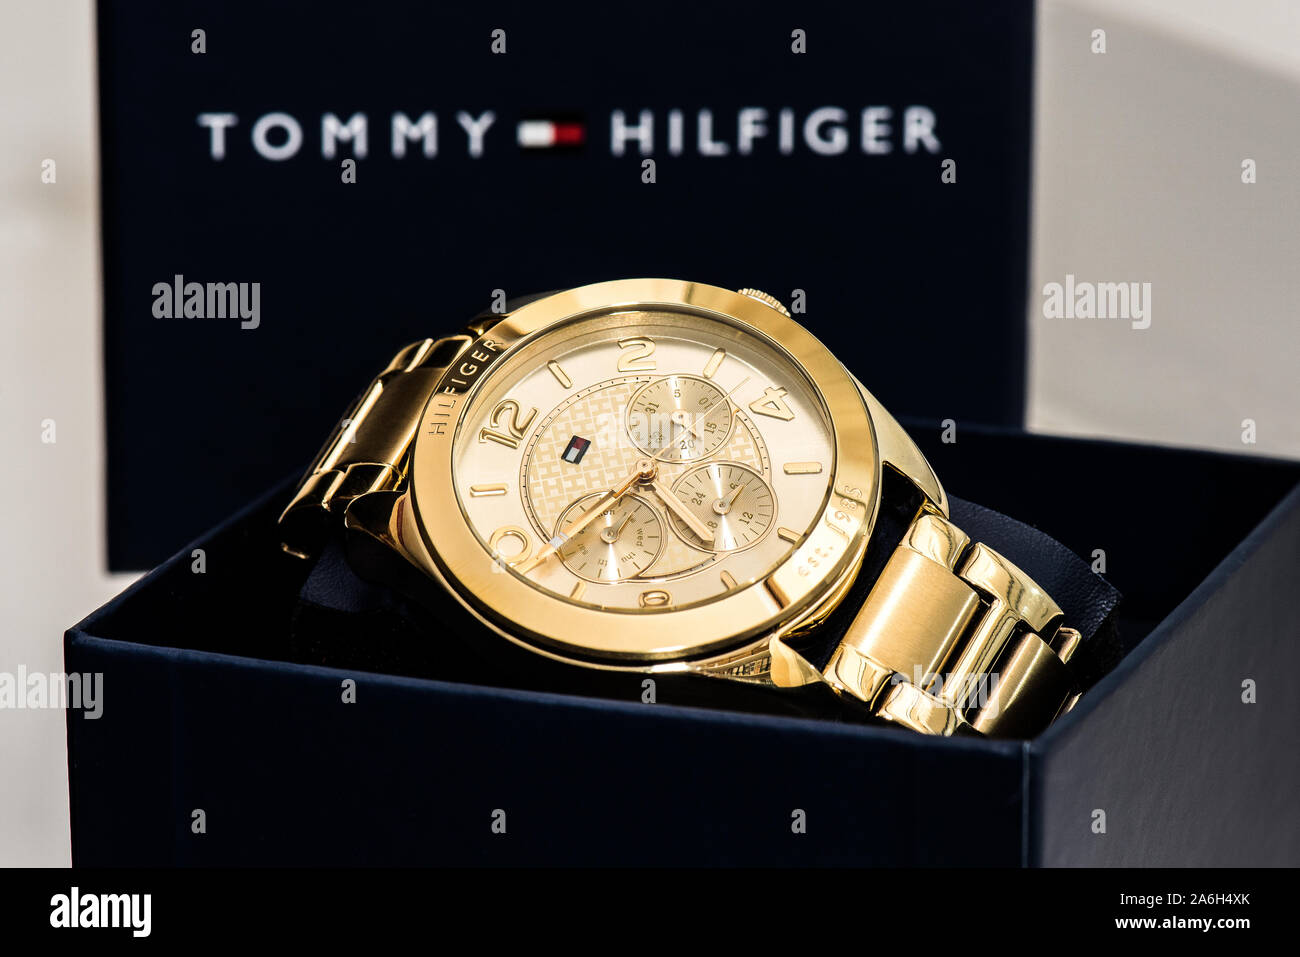 Ein Gold Tommy Hilfiger watch in der Präsentation, Luxus, teuer  Stockfotografie - Alamy